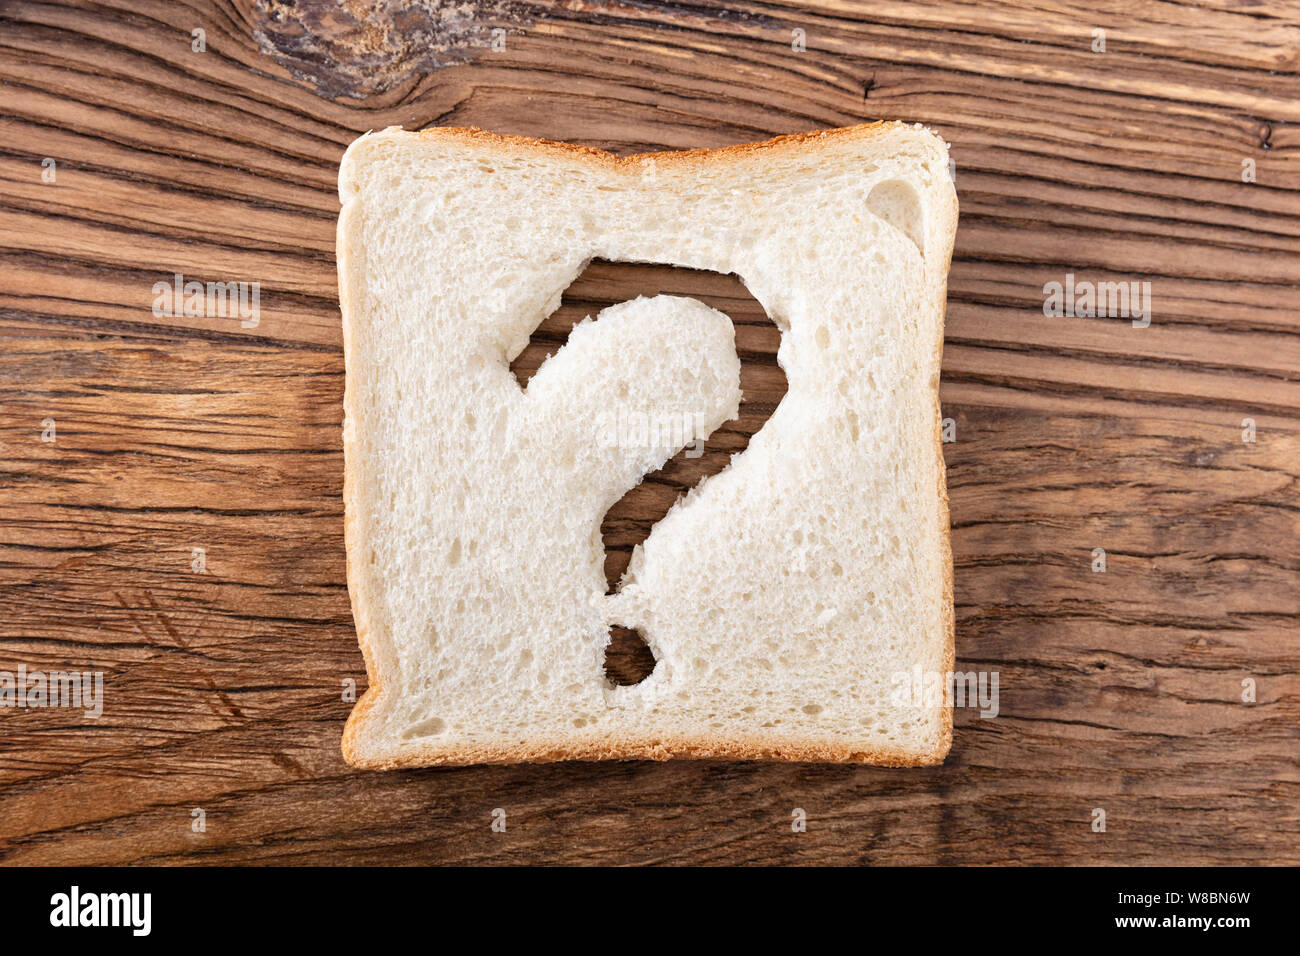 Scheibe Brot mit einem Fragezeichen auf hölzernen Schreibtisch Stockfoto